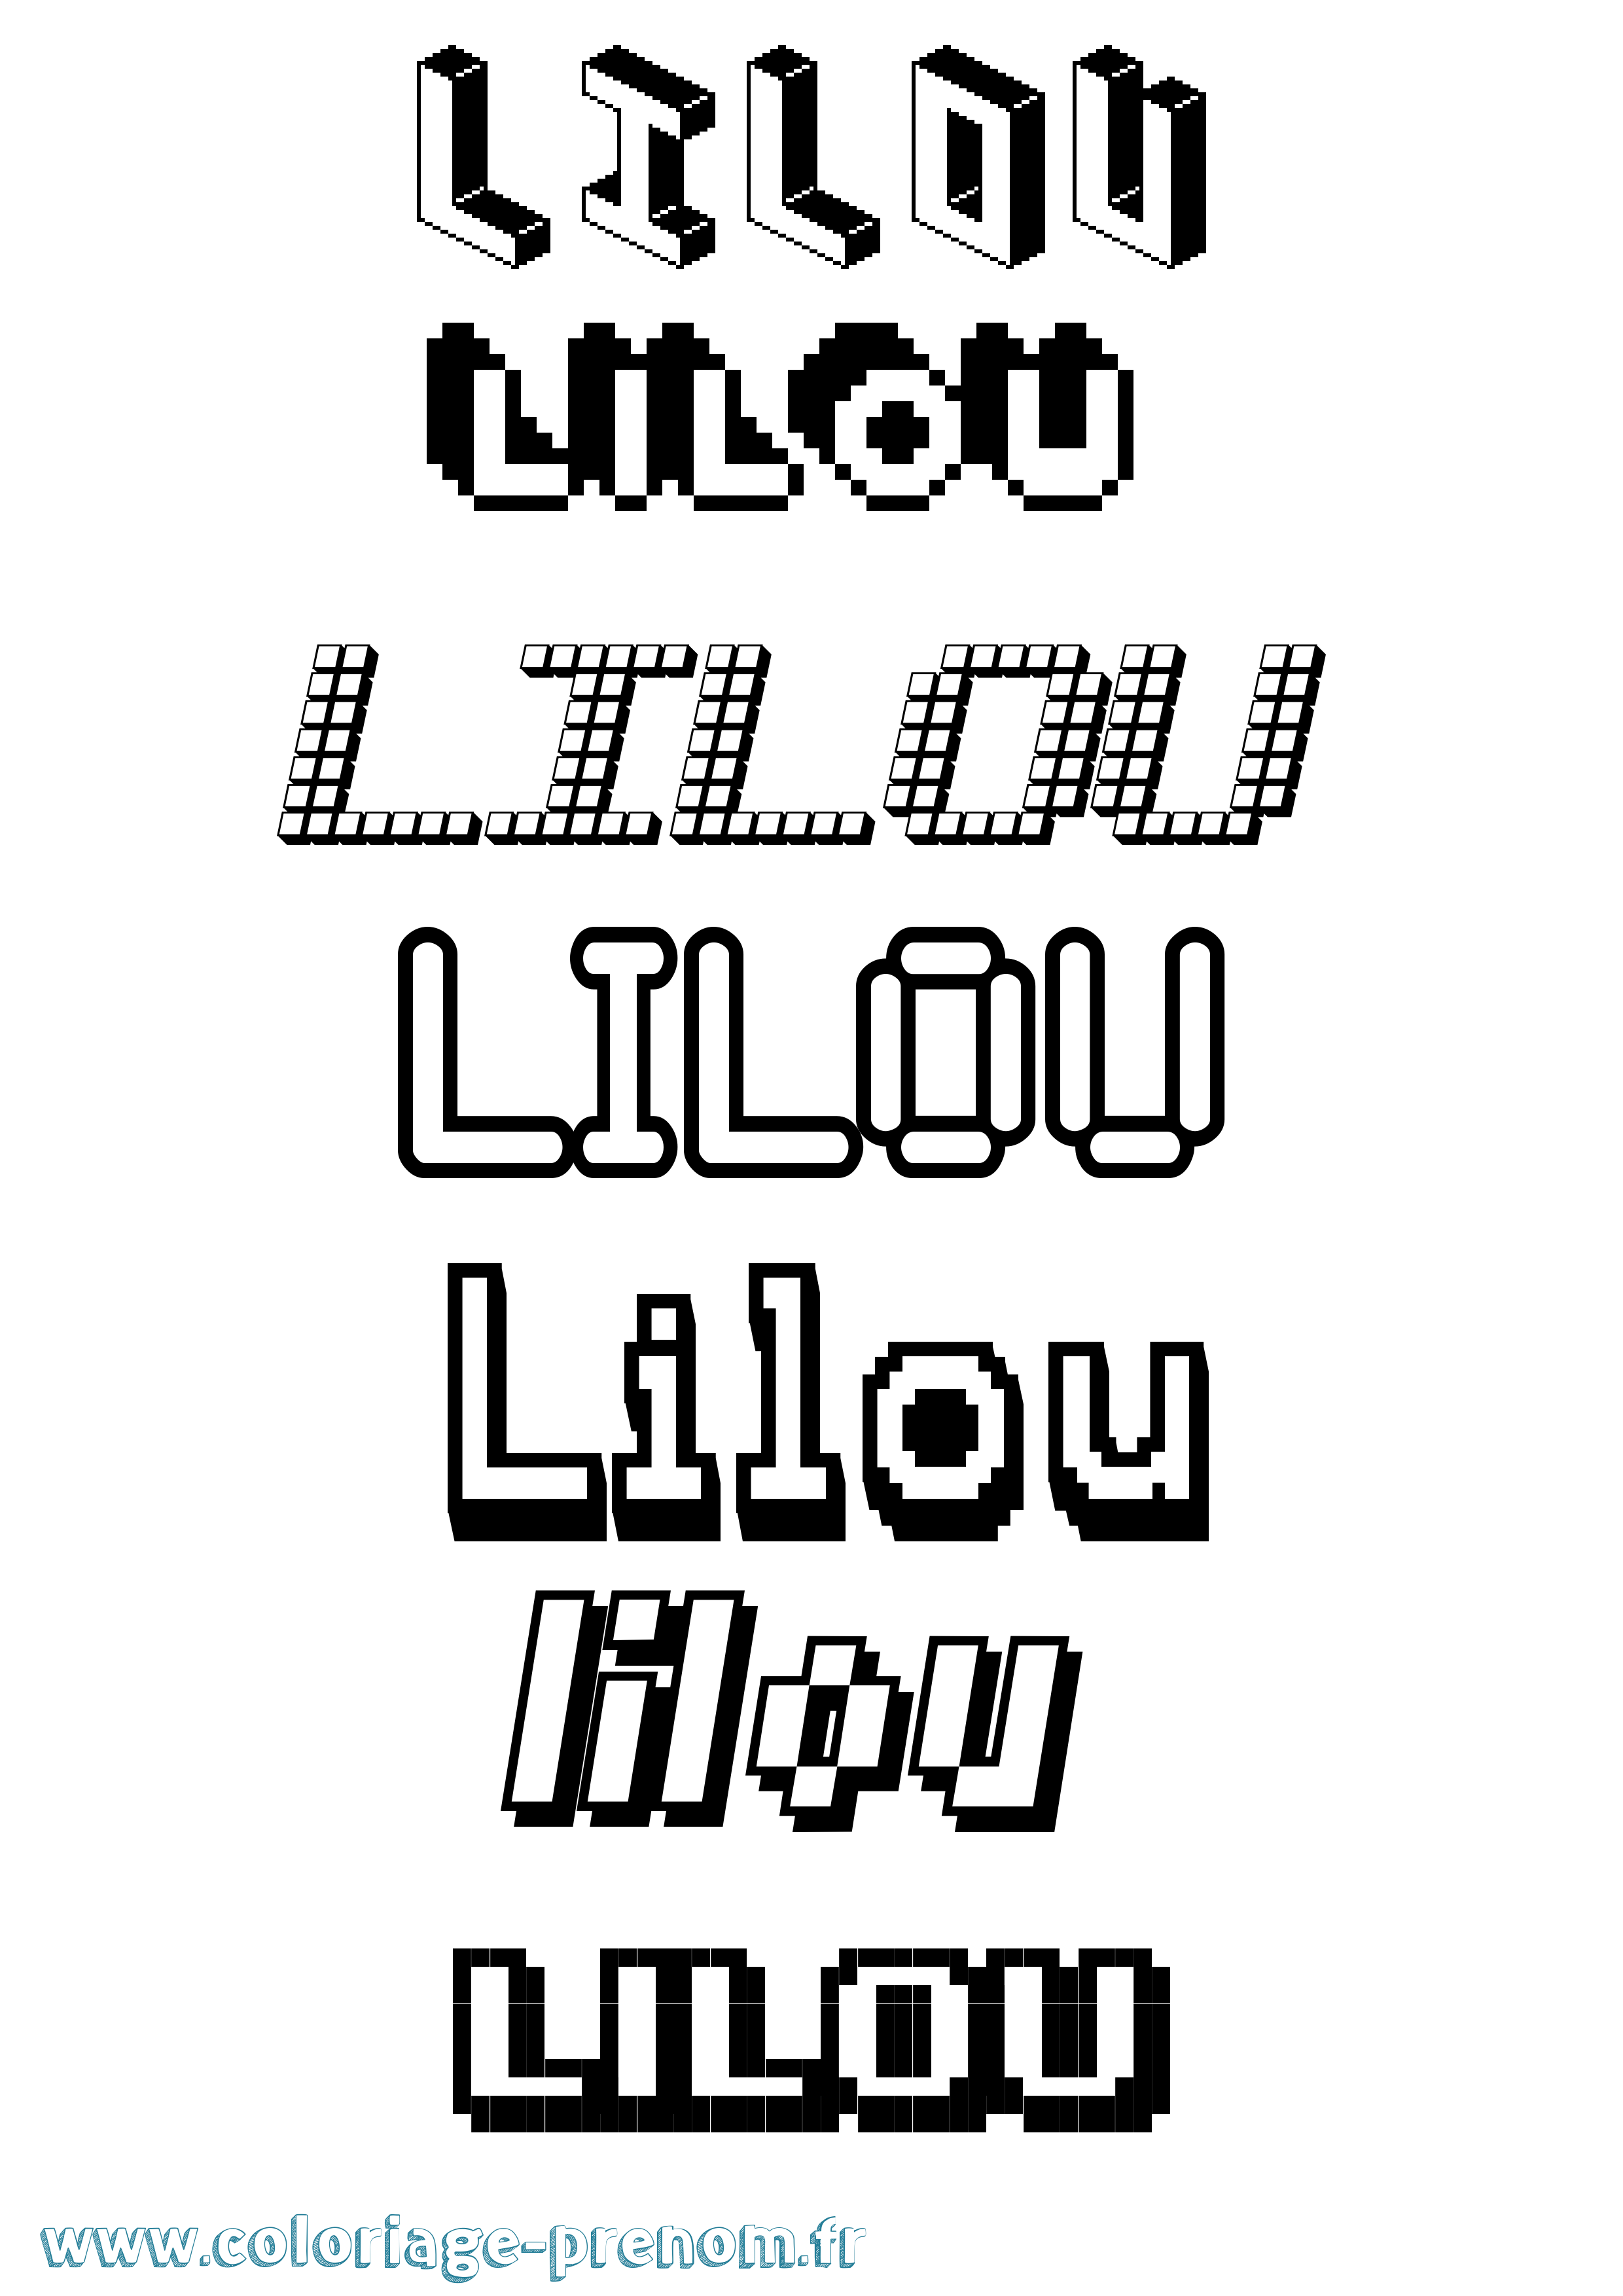 Coloriage prénom Lilou Pixel